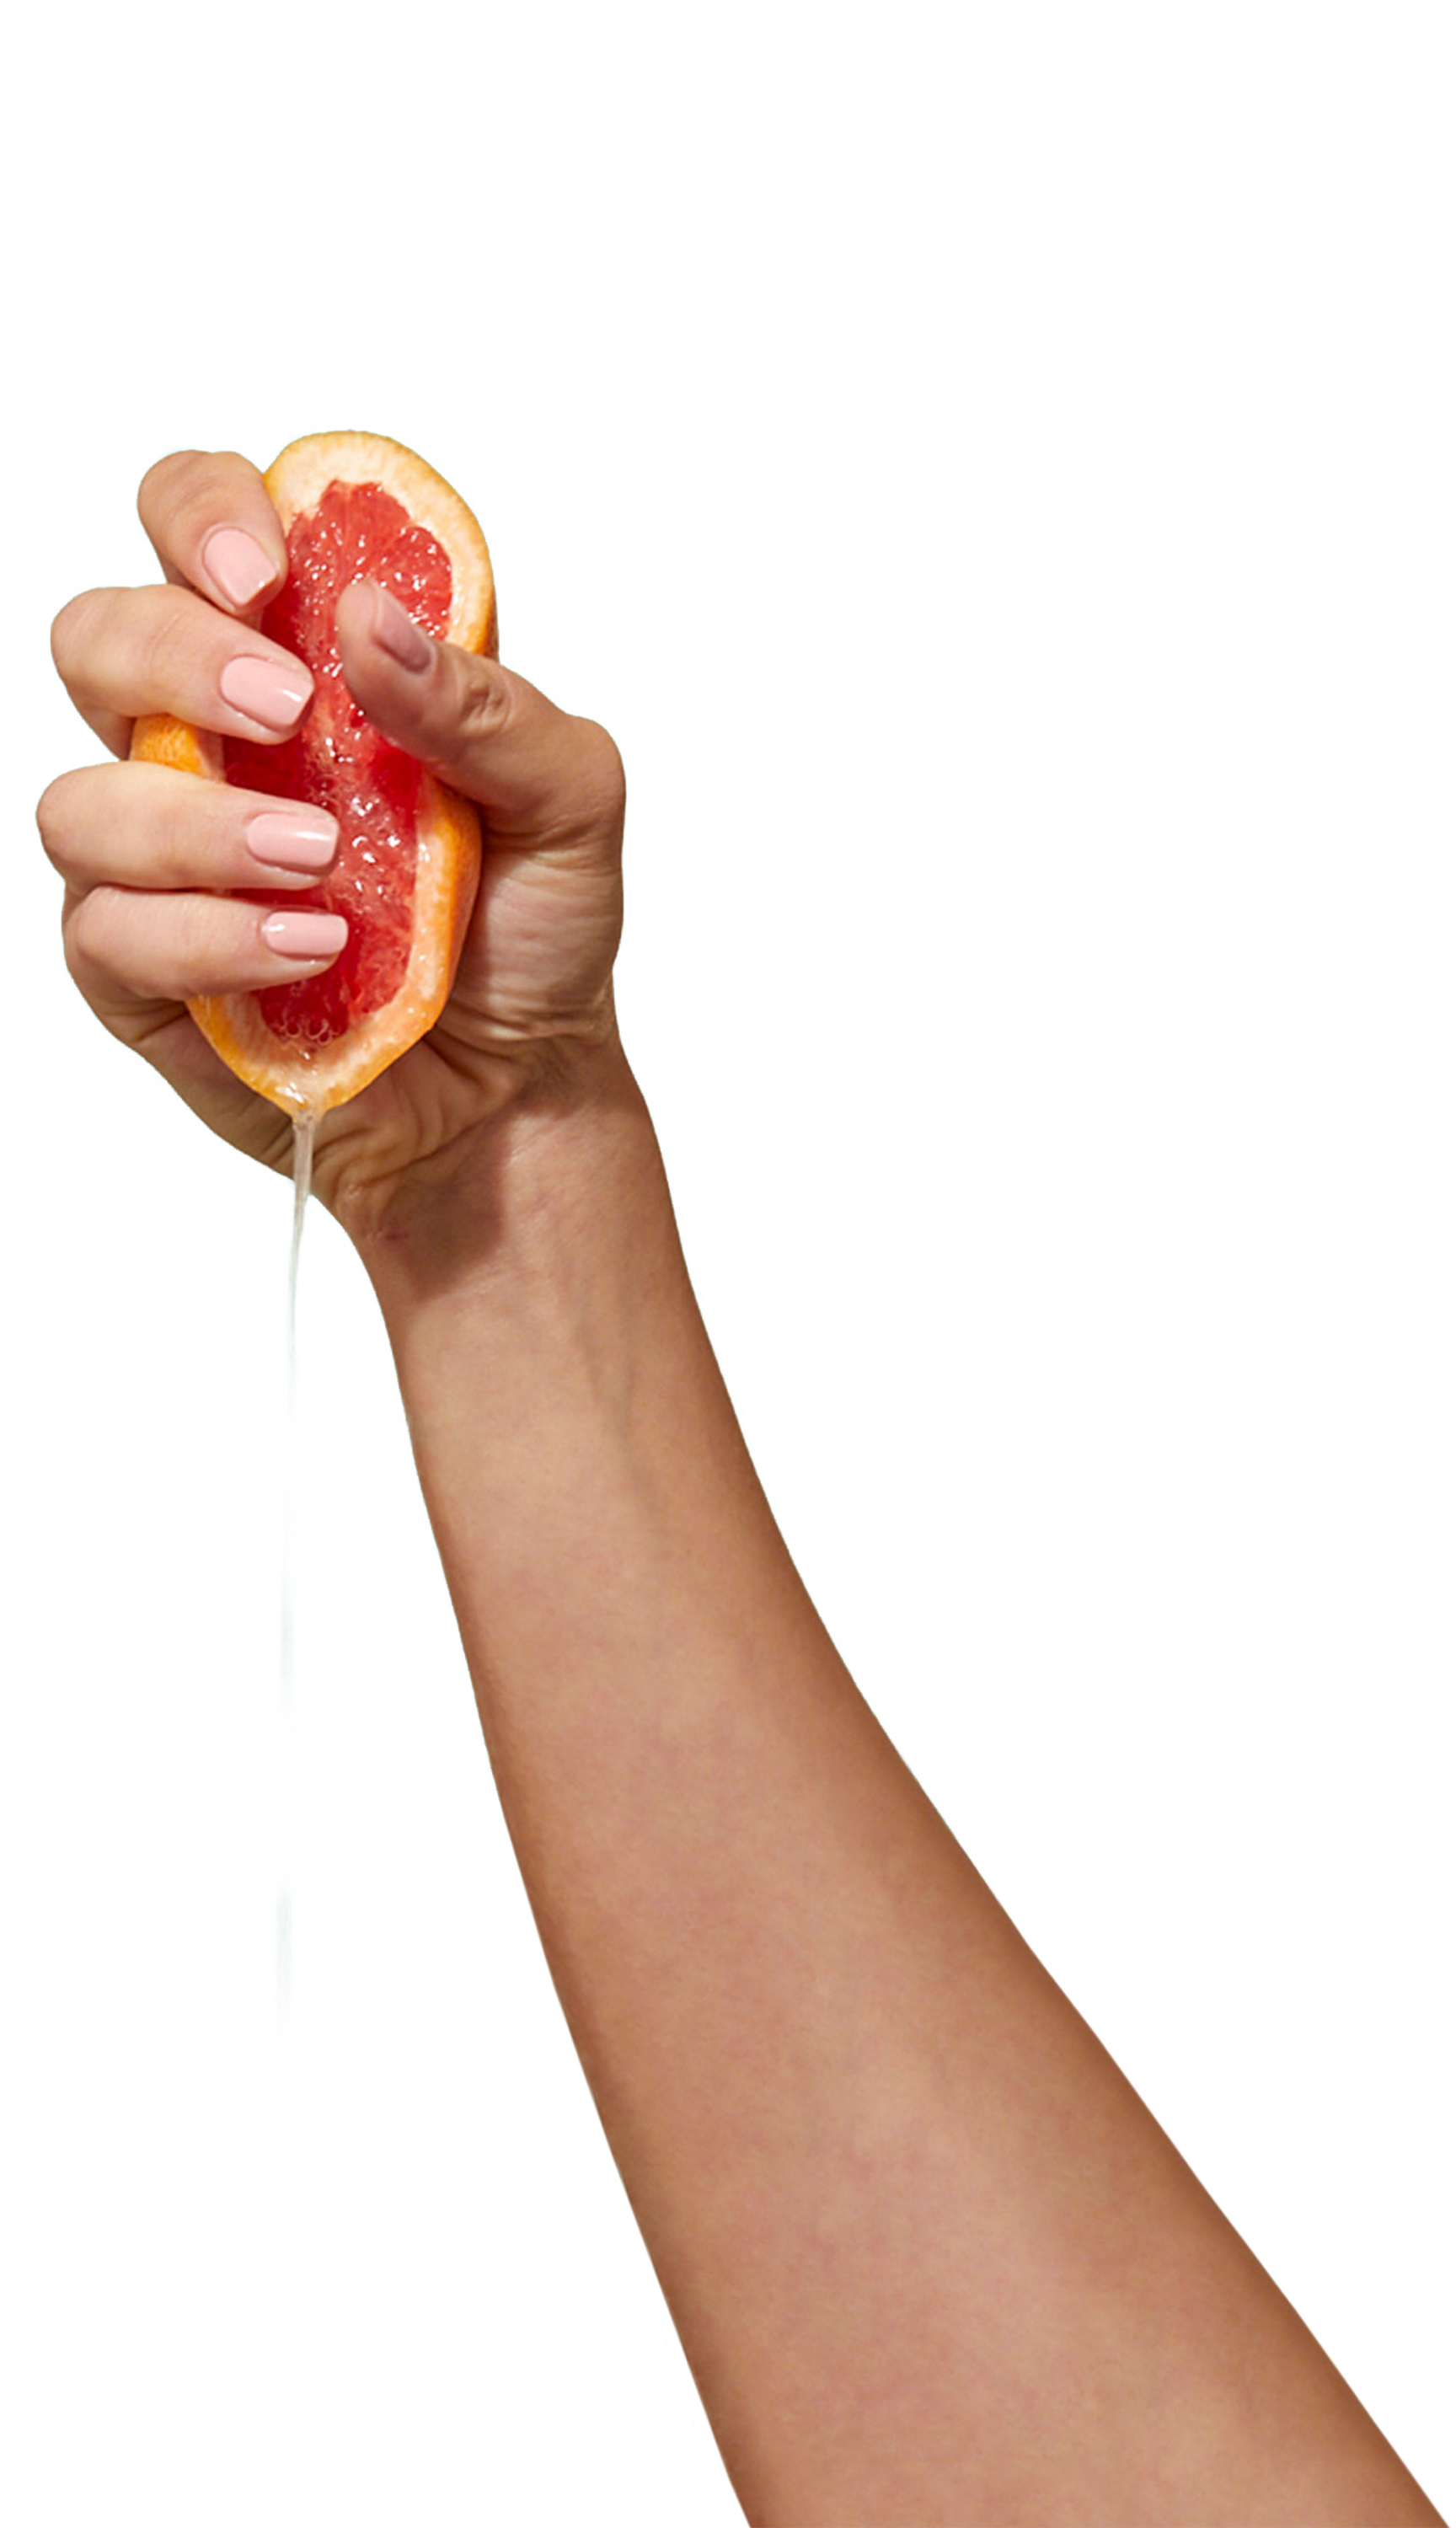 CARE halbe Grapefruit wird in einer Hand ausgedrückt